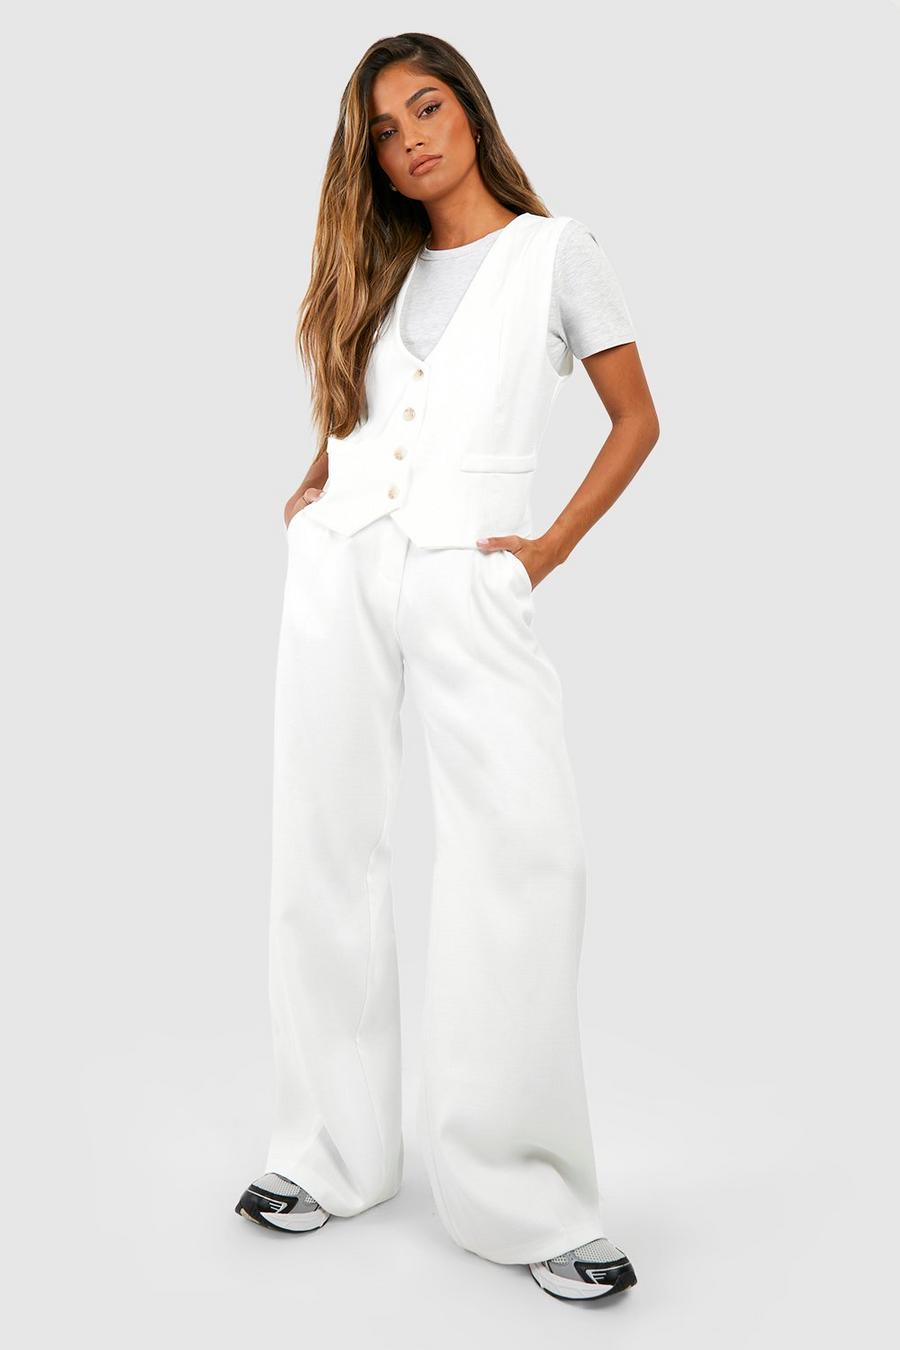 Pantalón entallado de tela efecto lino texturizado con pernera ancha, Ivory image number 1